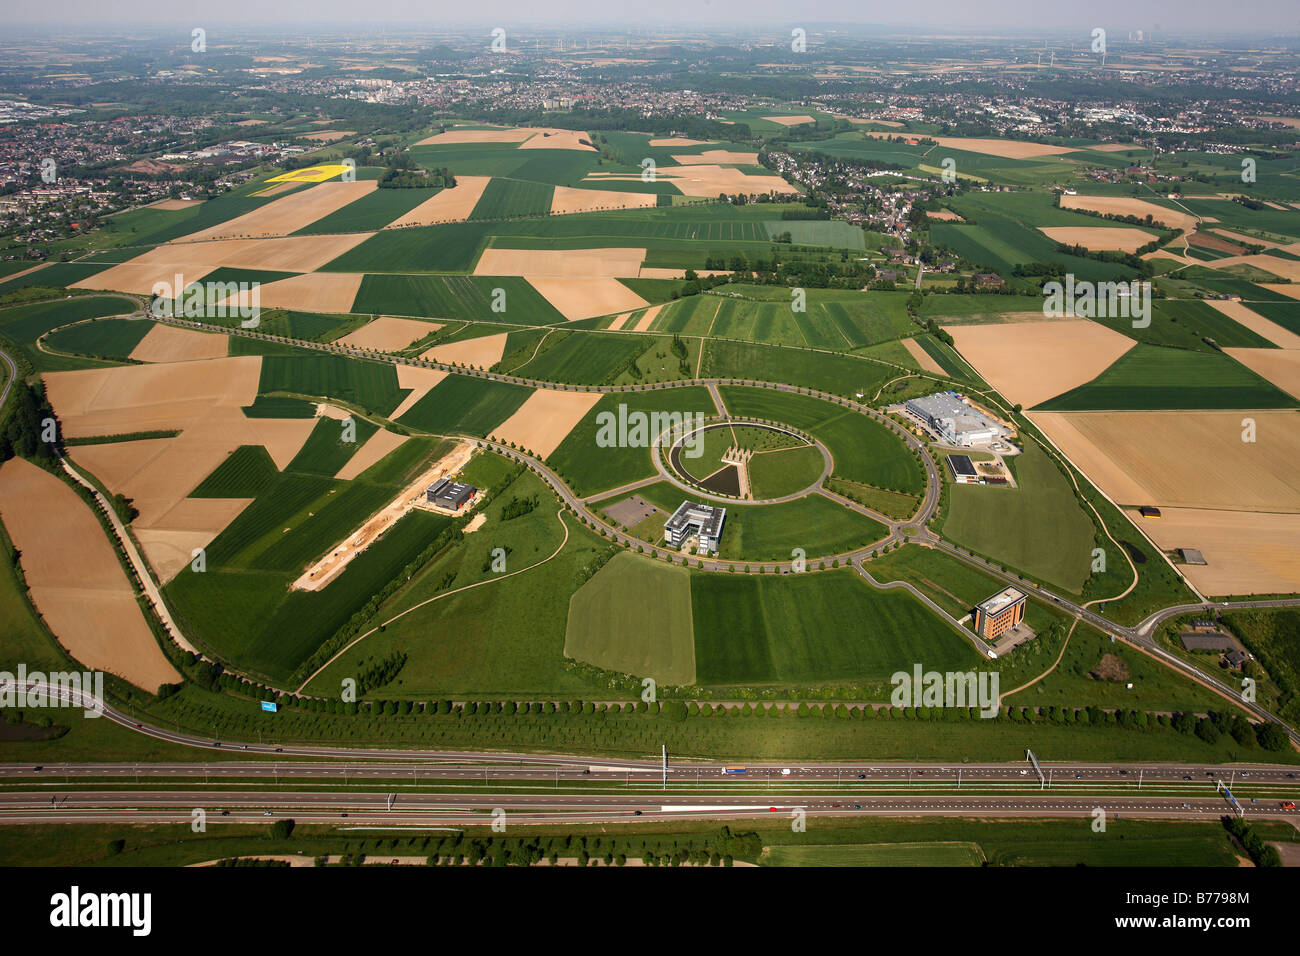 Foto aerea, AVANTIS europeo della scienza e Business Park, il primo cross-border German-Dutch business park, regione dell'UE Maas-Rhi Foto Stock